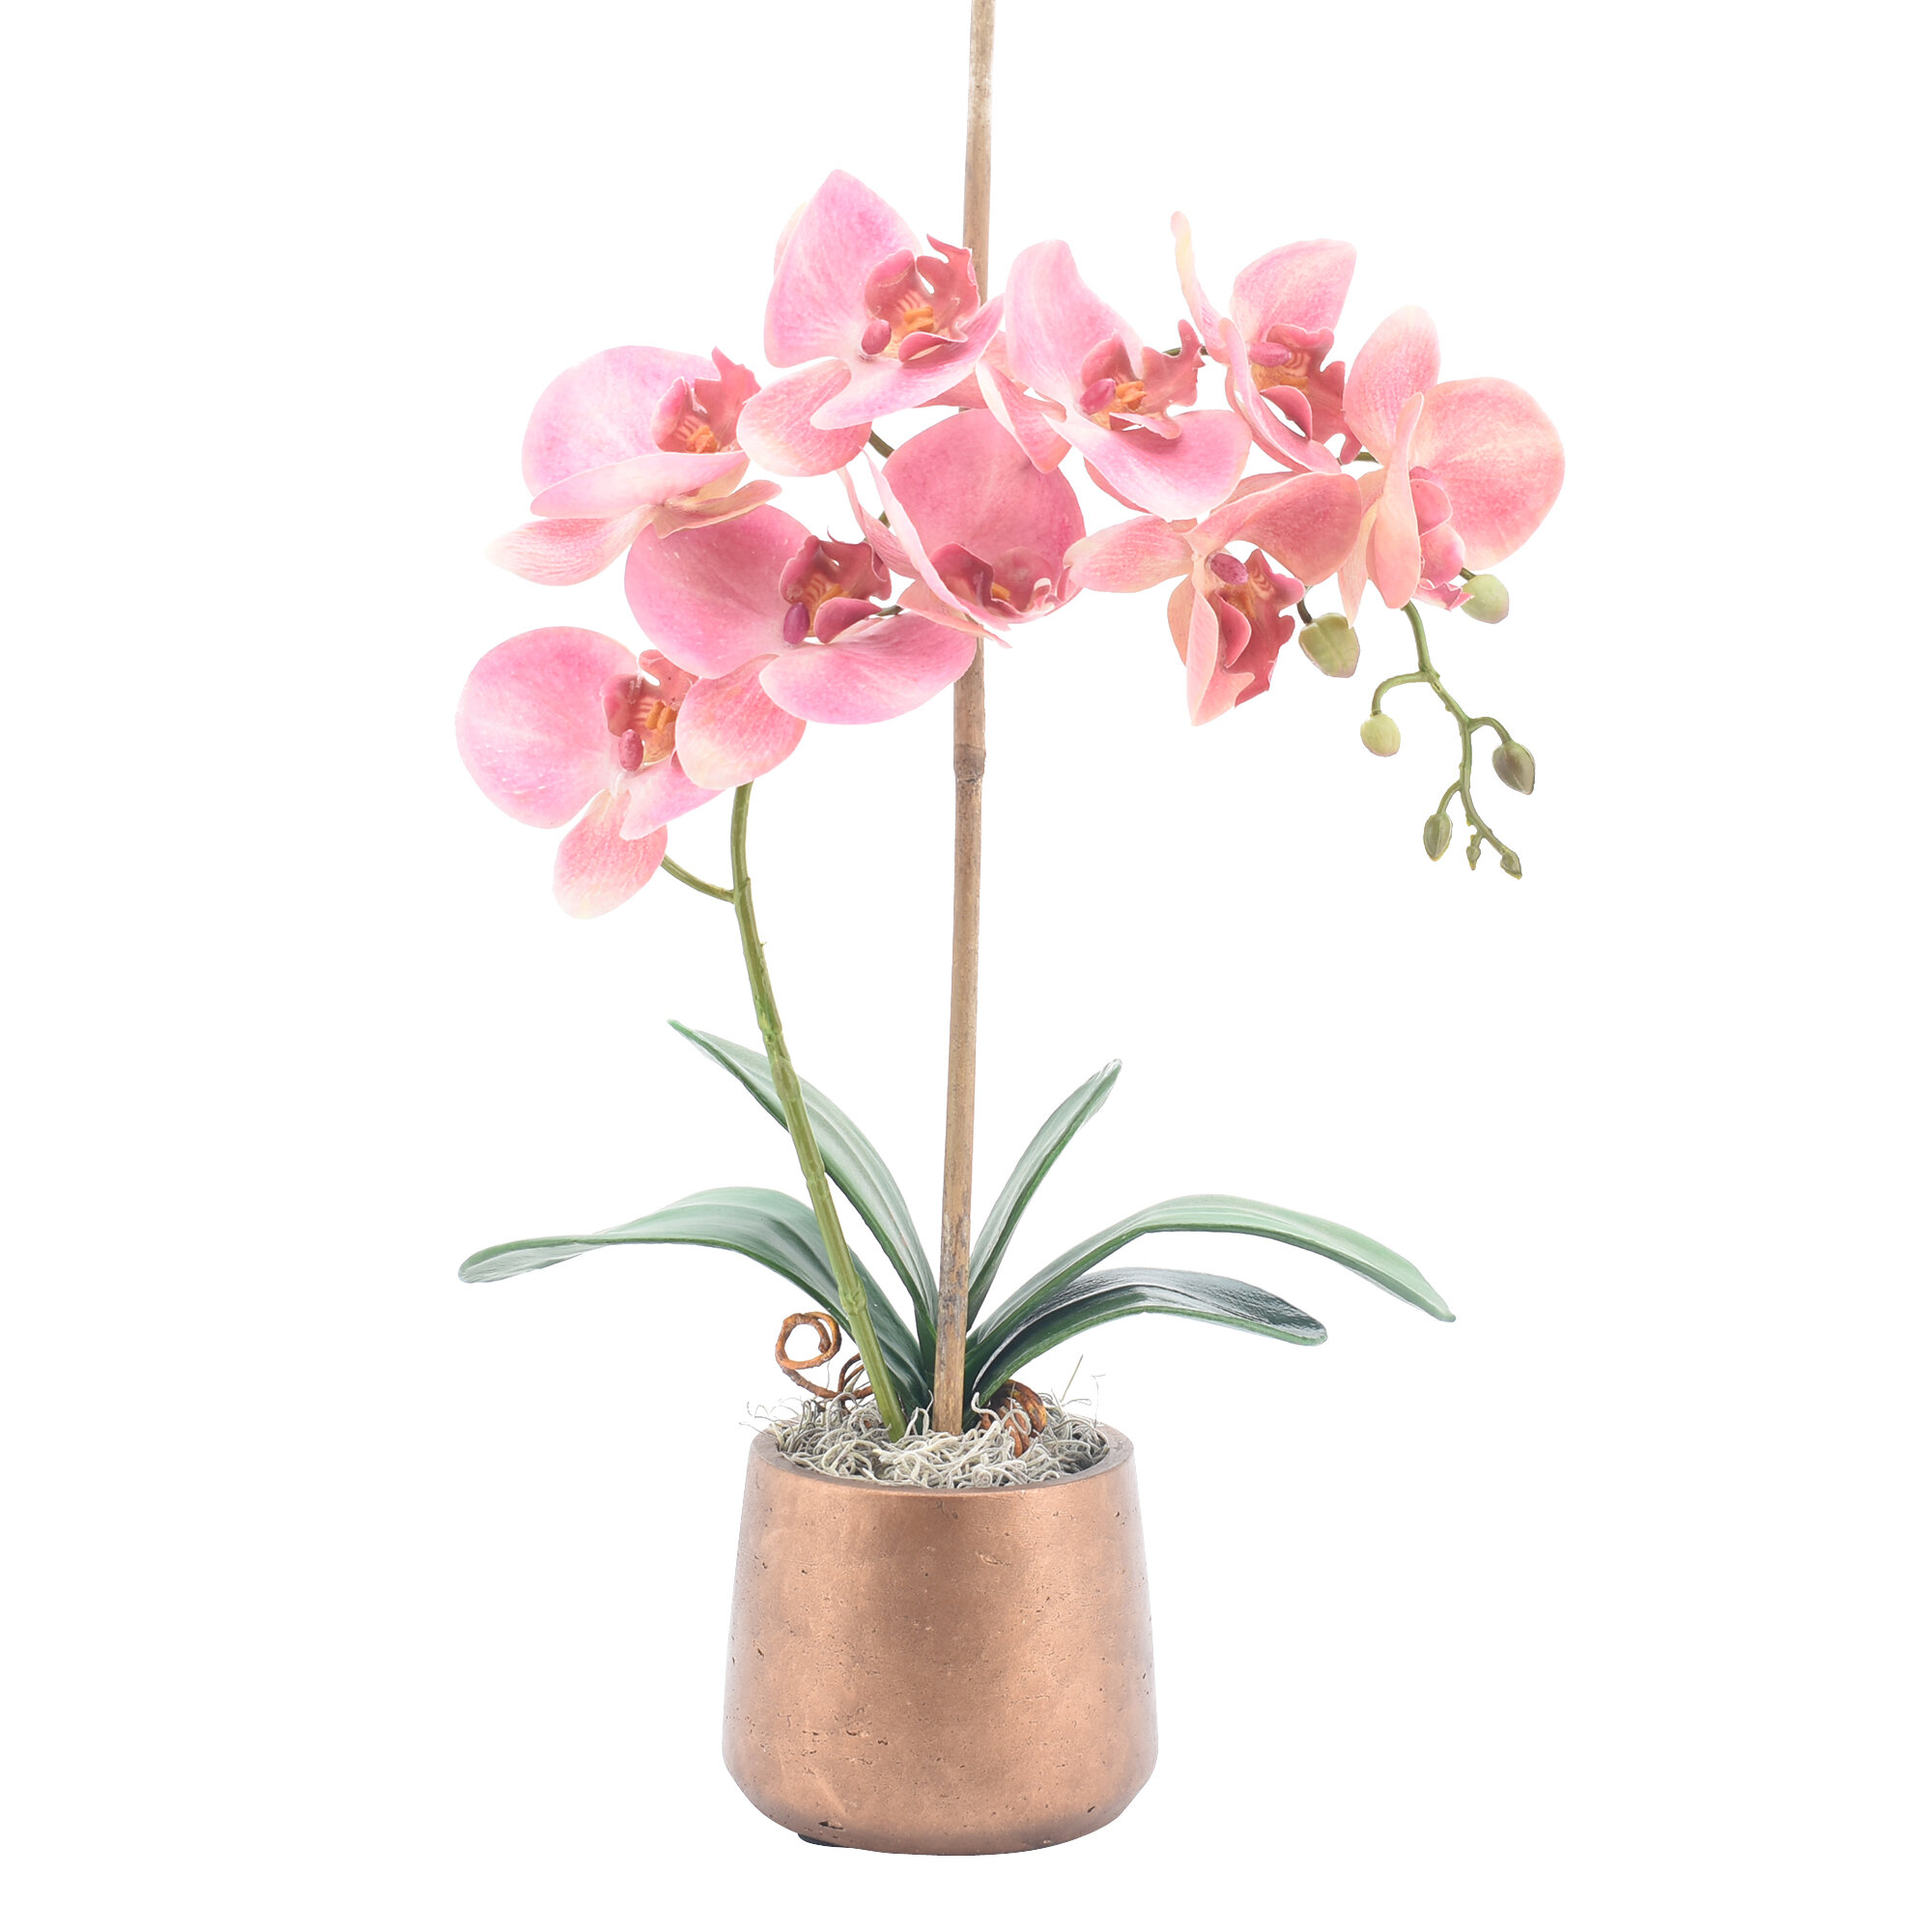 Phalaenopsis Orchids Floral Arrangement In Pot Reviews Joss Main